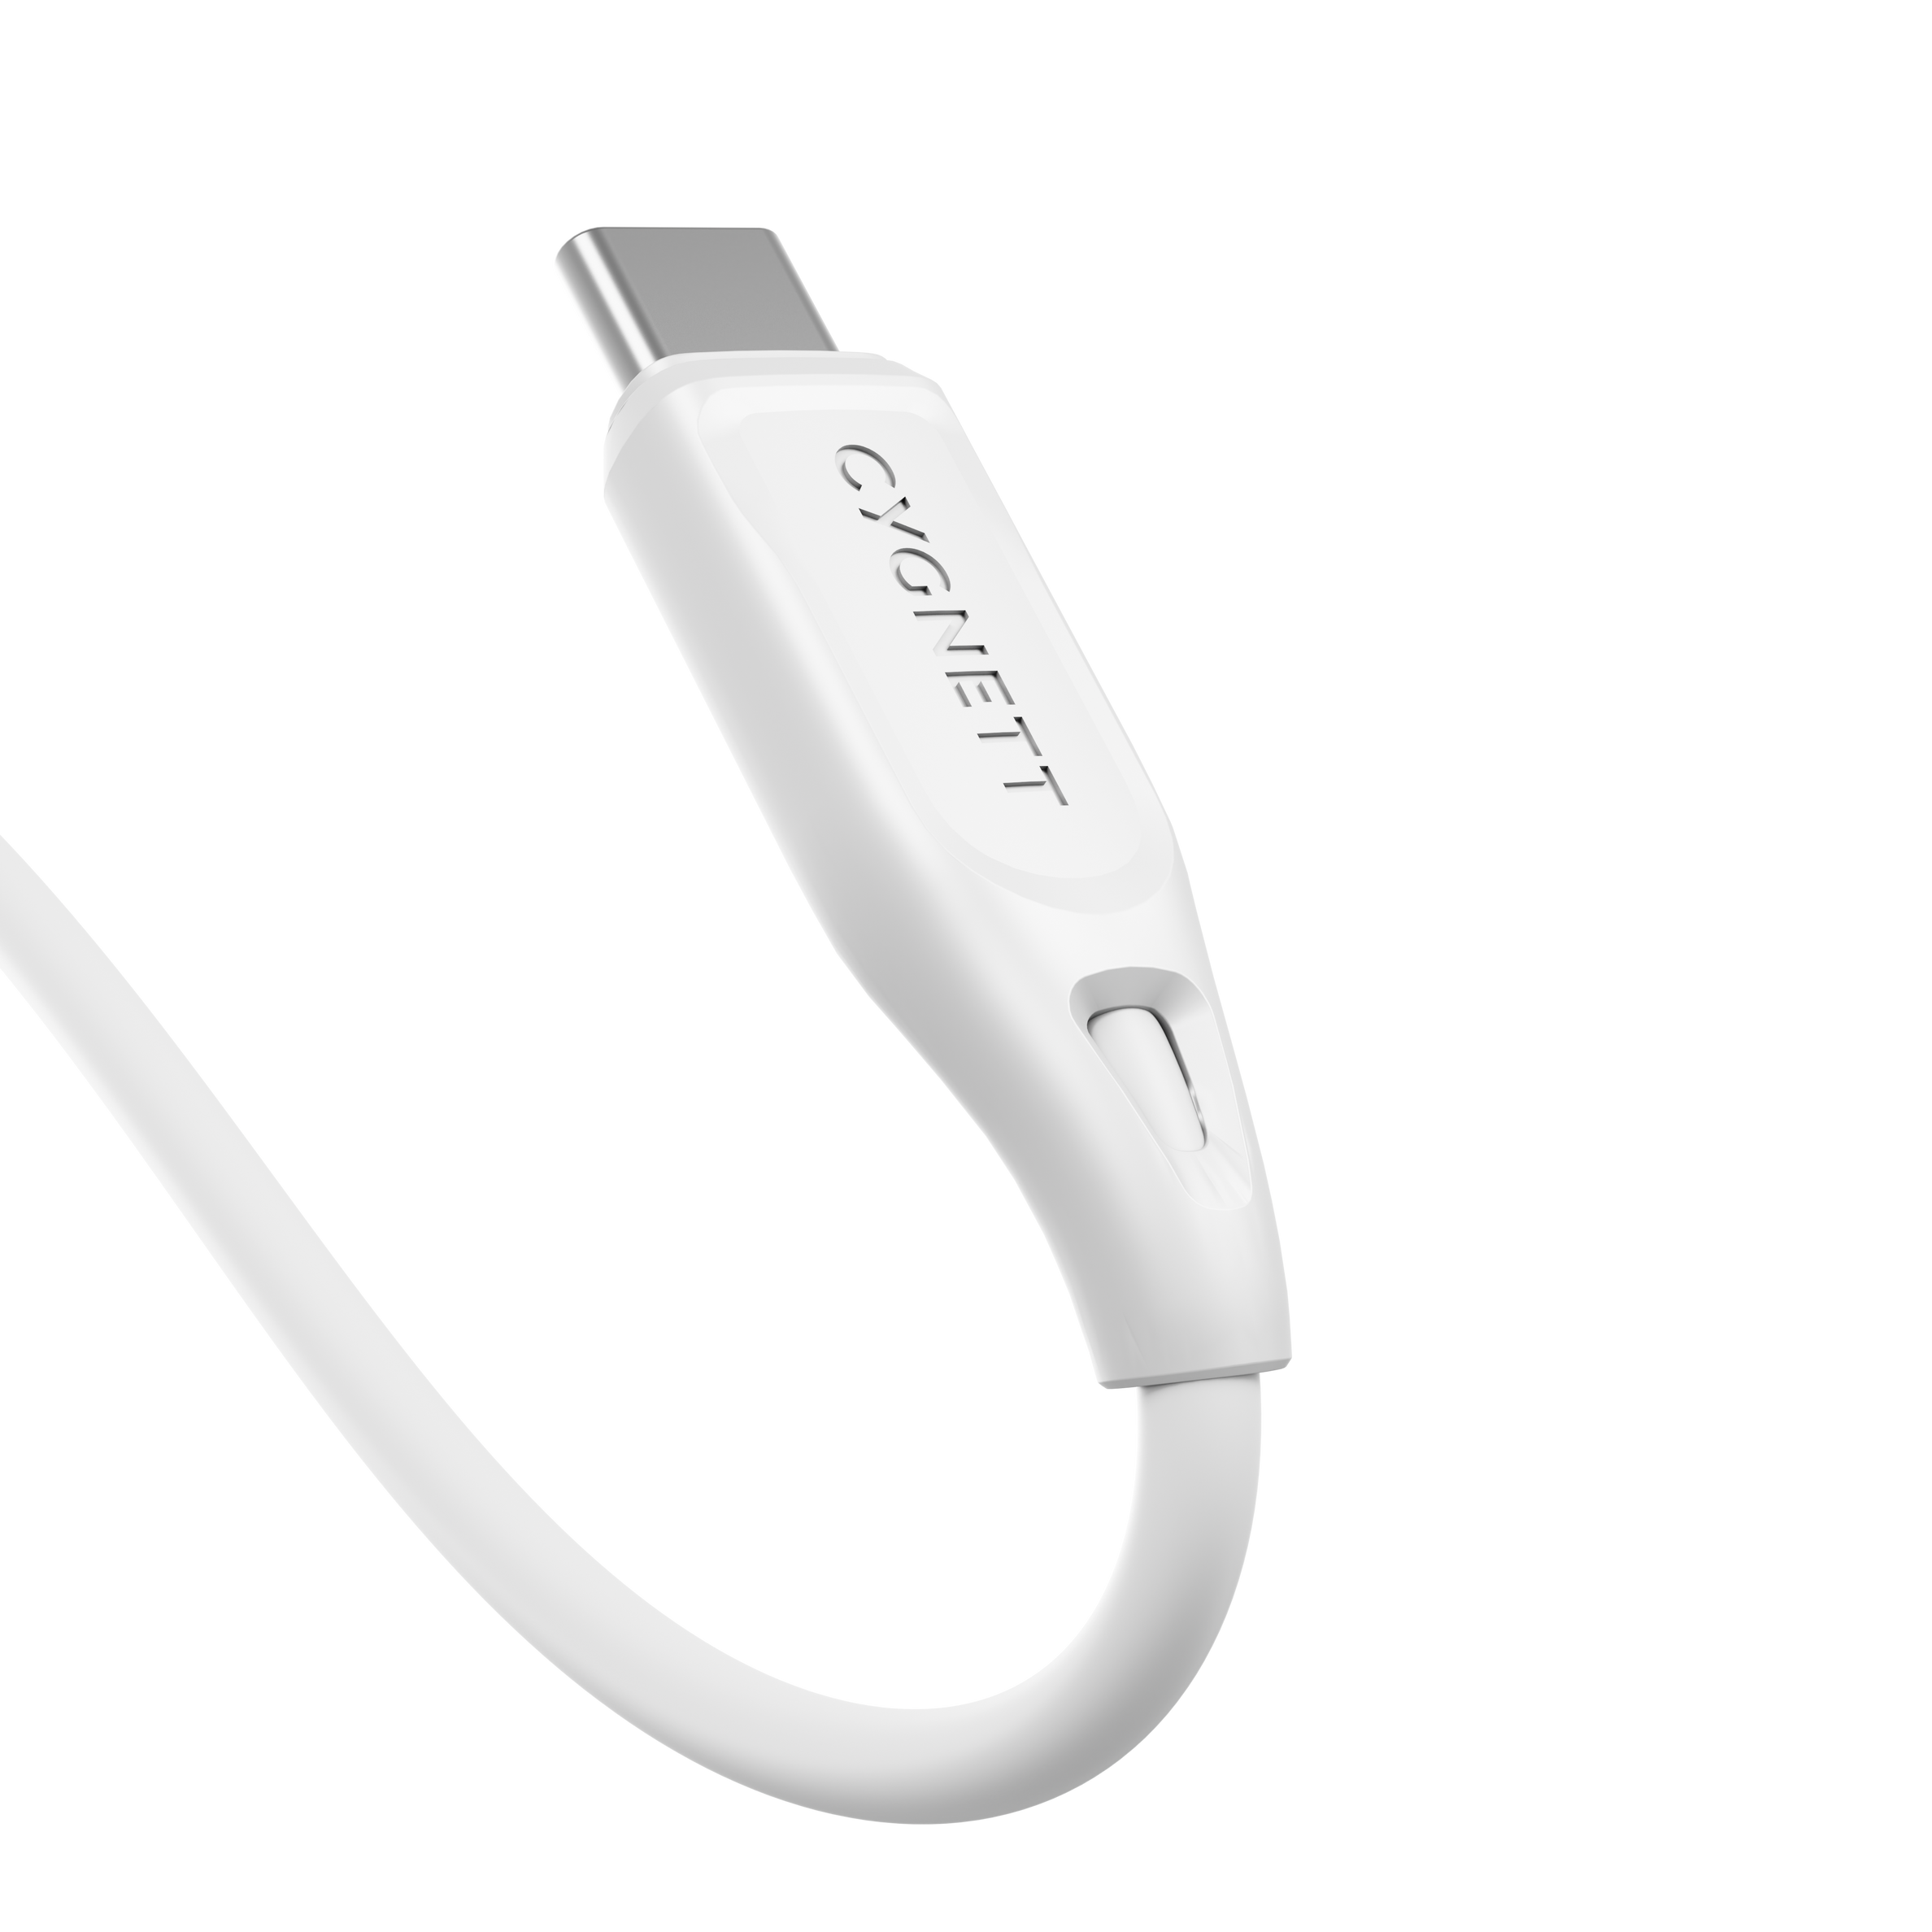 USB-C to USB-C (USB 2.0) Cable 2m - White - Cygnett (AU)